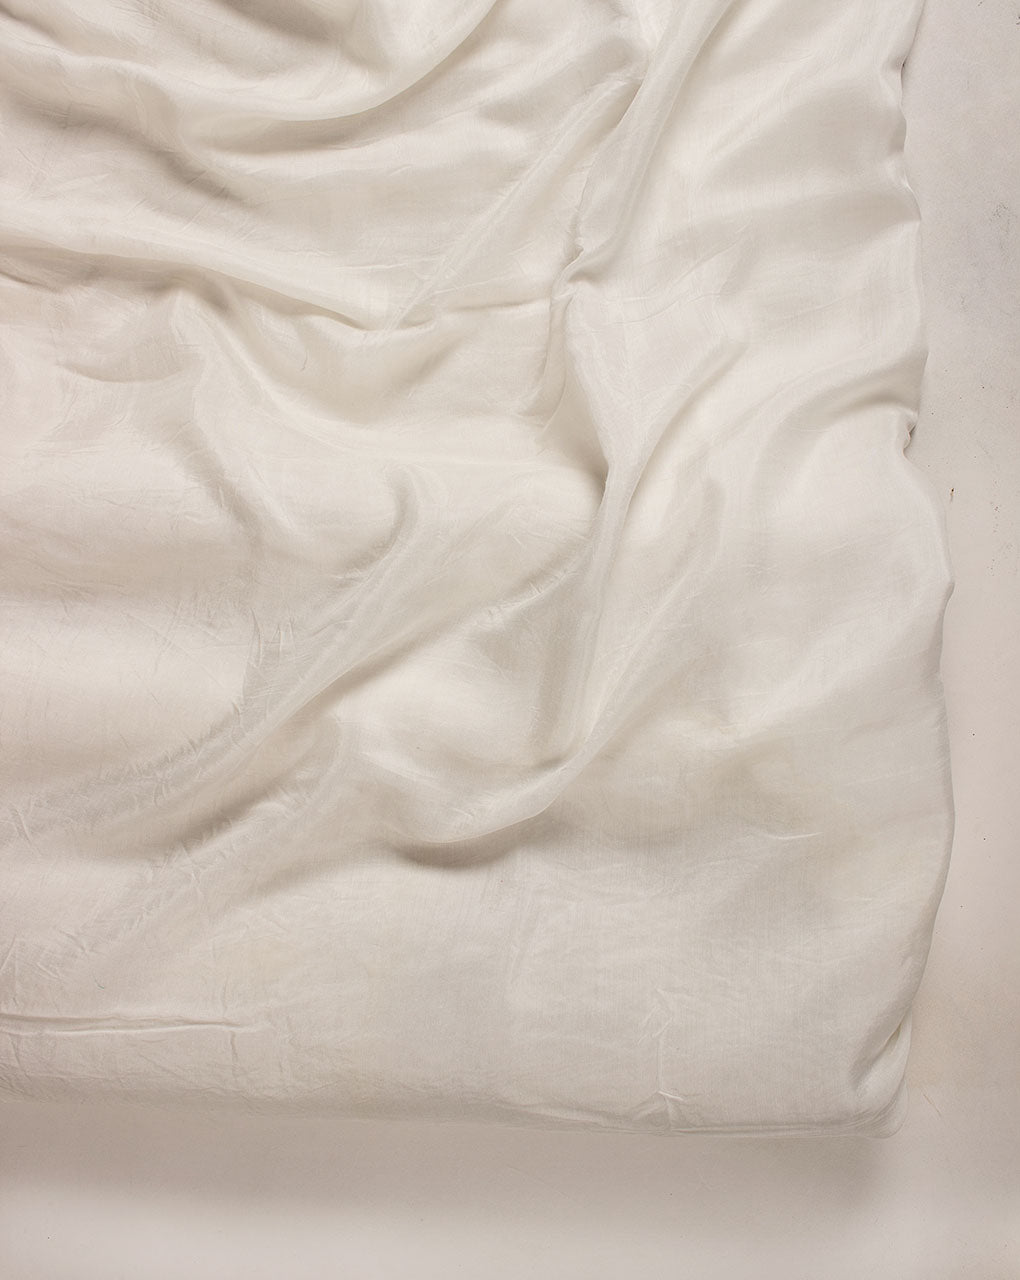 70 Gram Bemberg x VFY Fabric (Bemberg Silk)